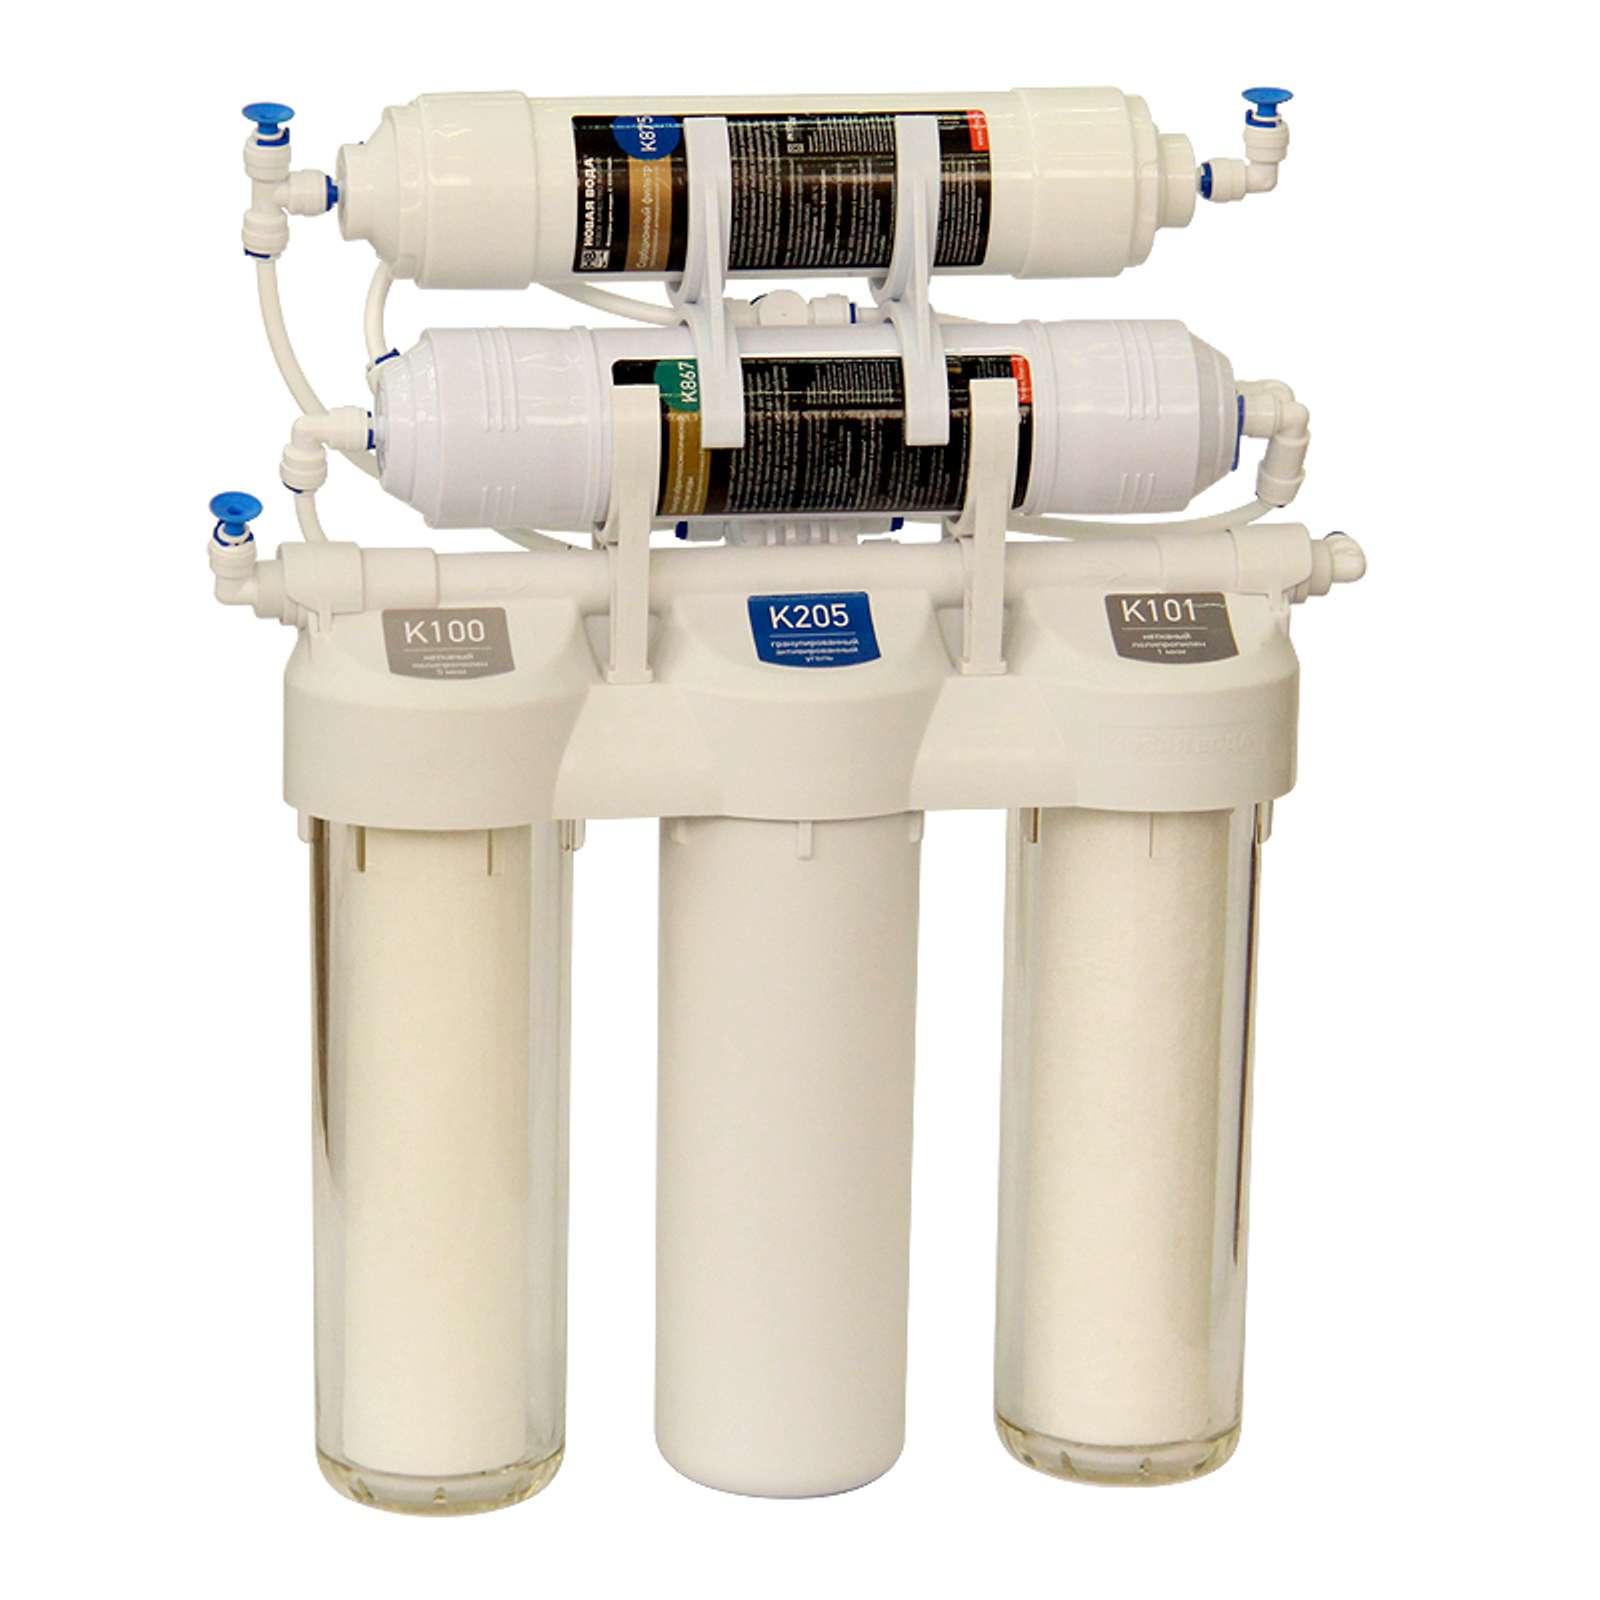 Новая вода 300. Praktic eu300. Проточный фильтр для воды 1/2 Гейзер. Фильтр новая вода с обратным осмосом. Фильтр для воды проточный Atoll.